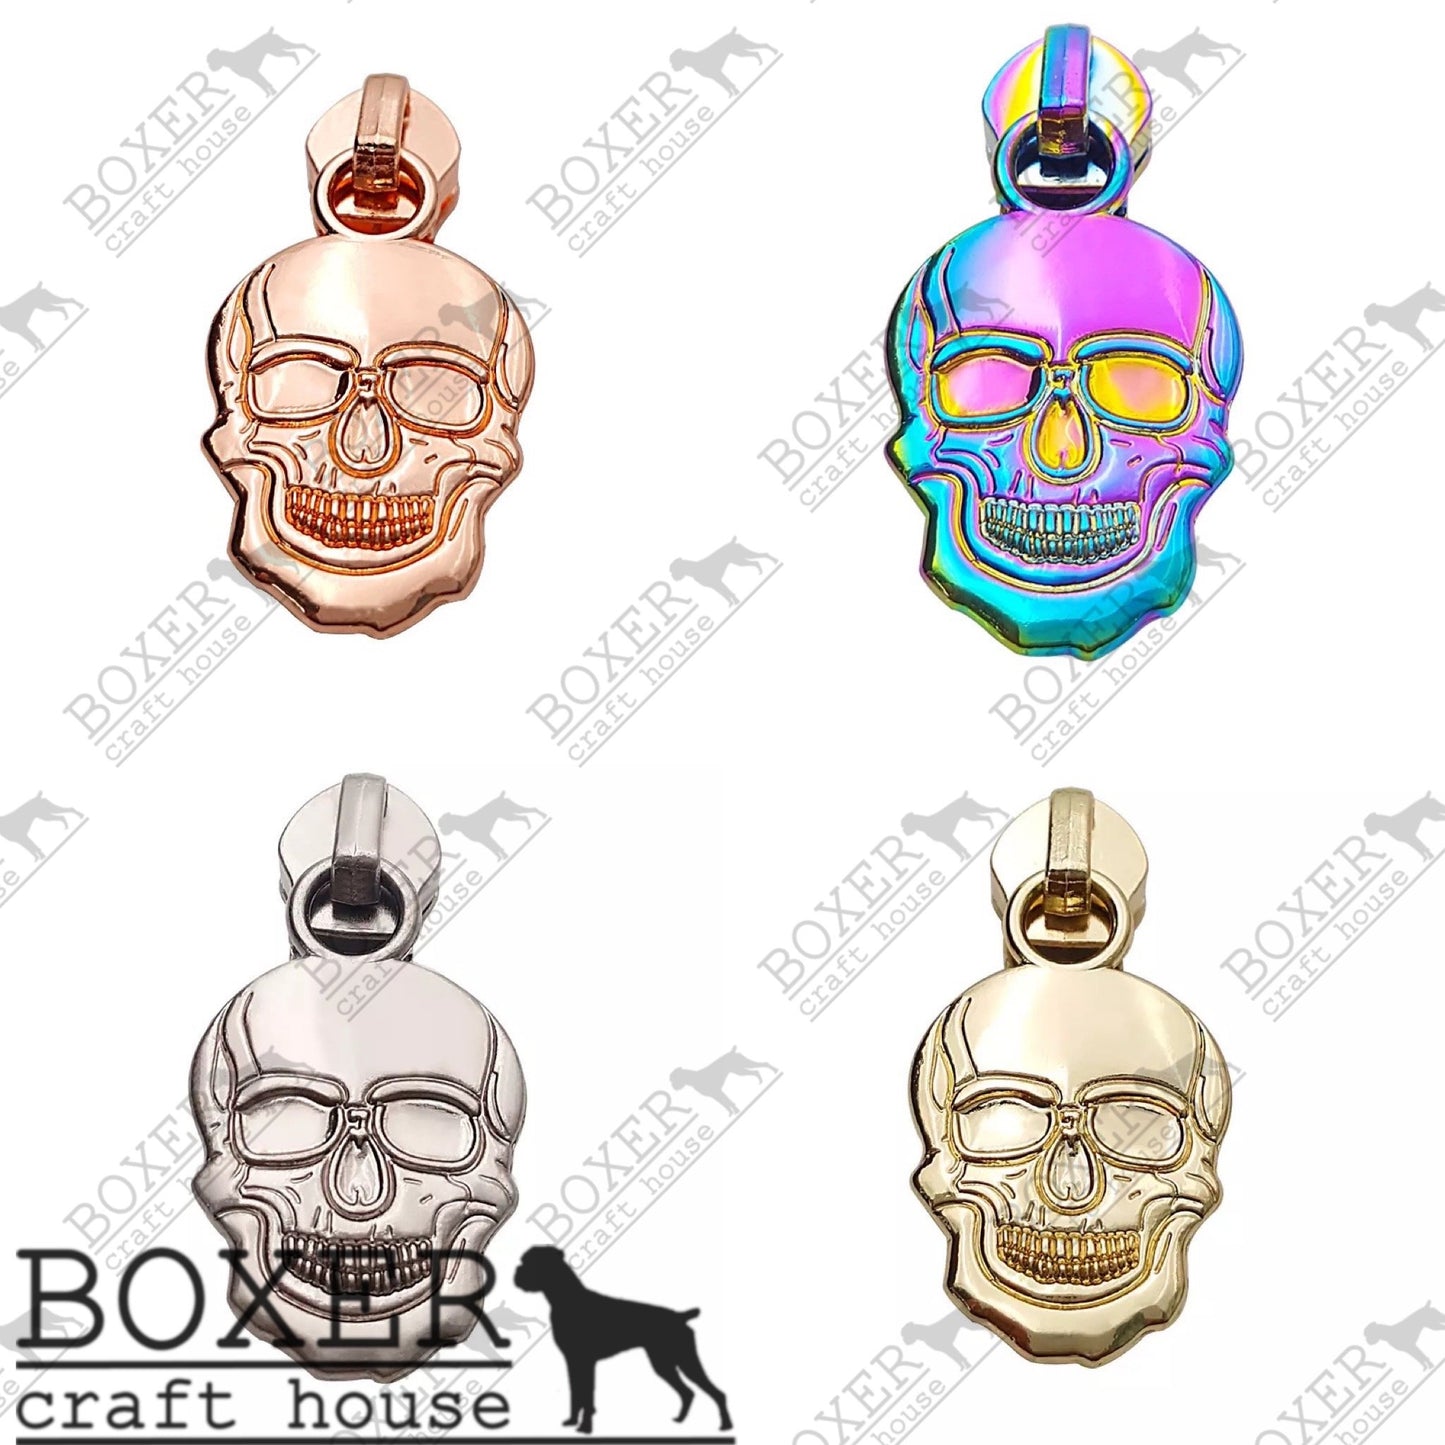 Skull #5 Zipper Pull – Boxer Craft House